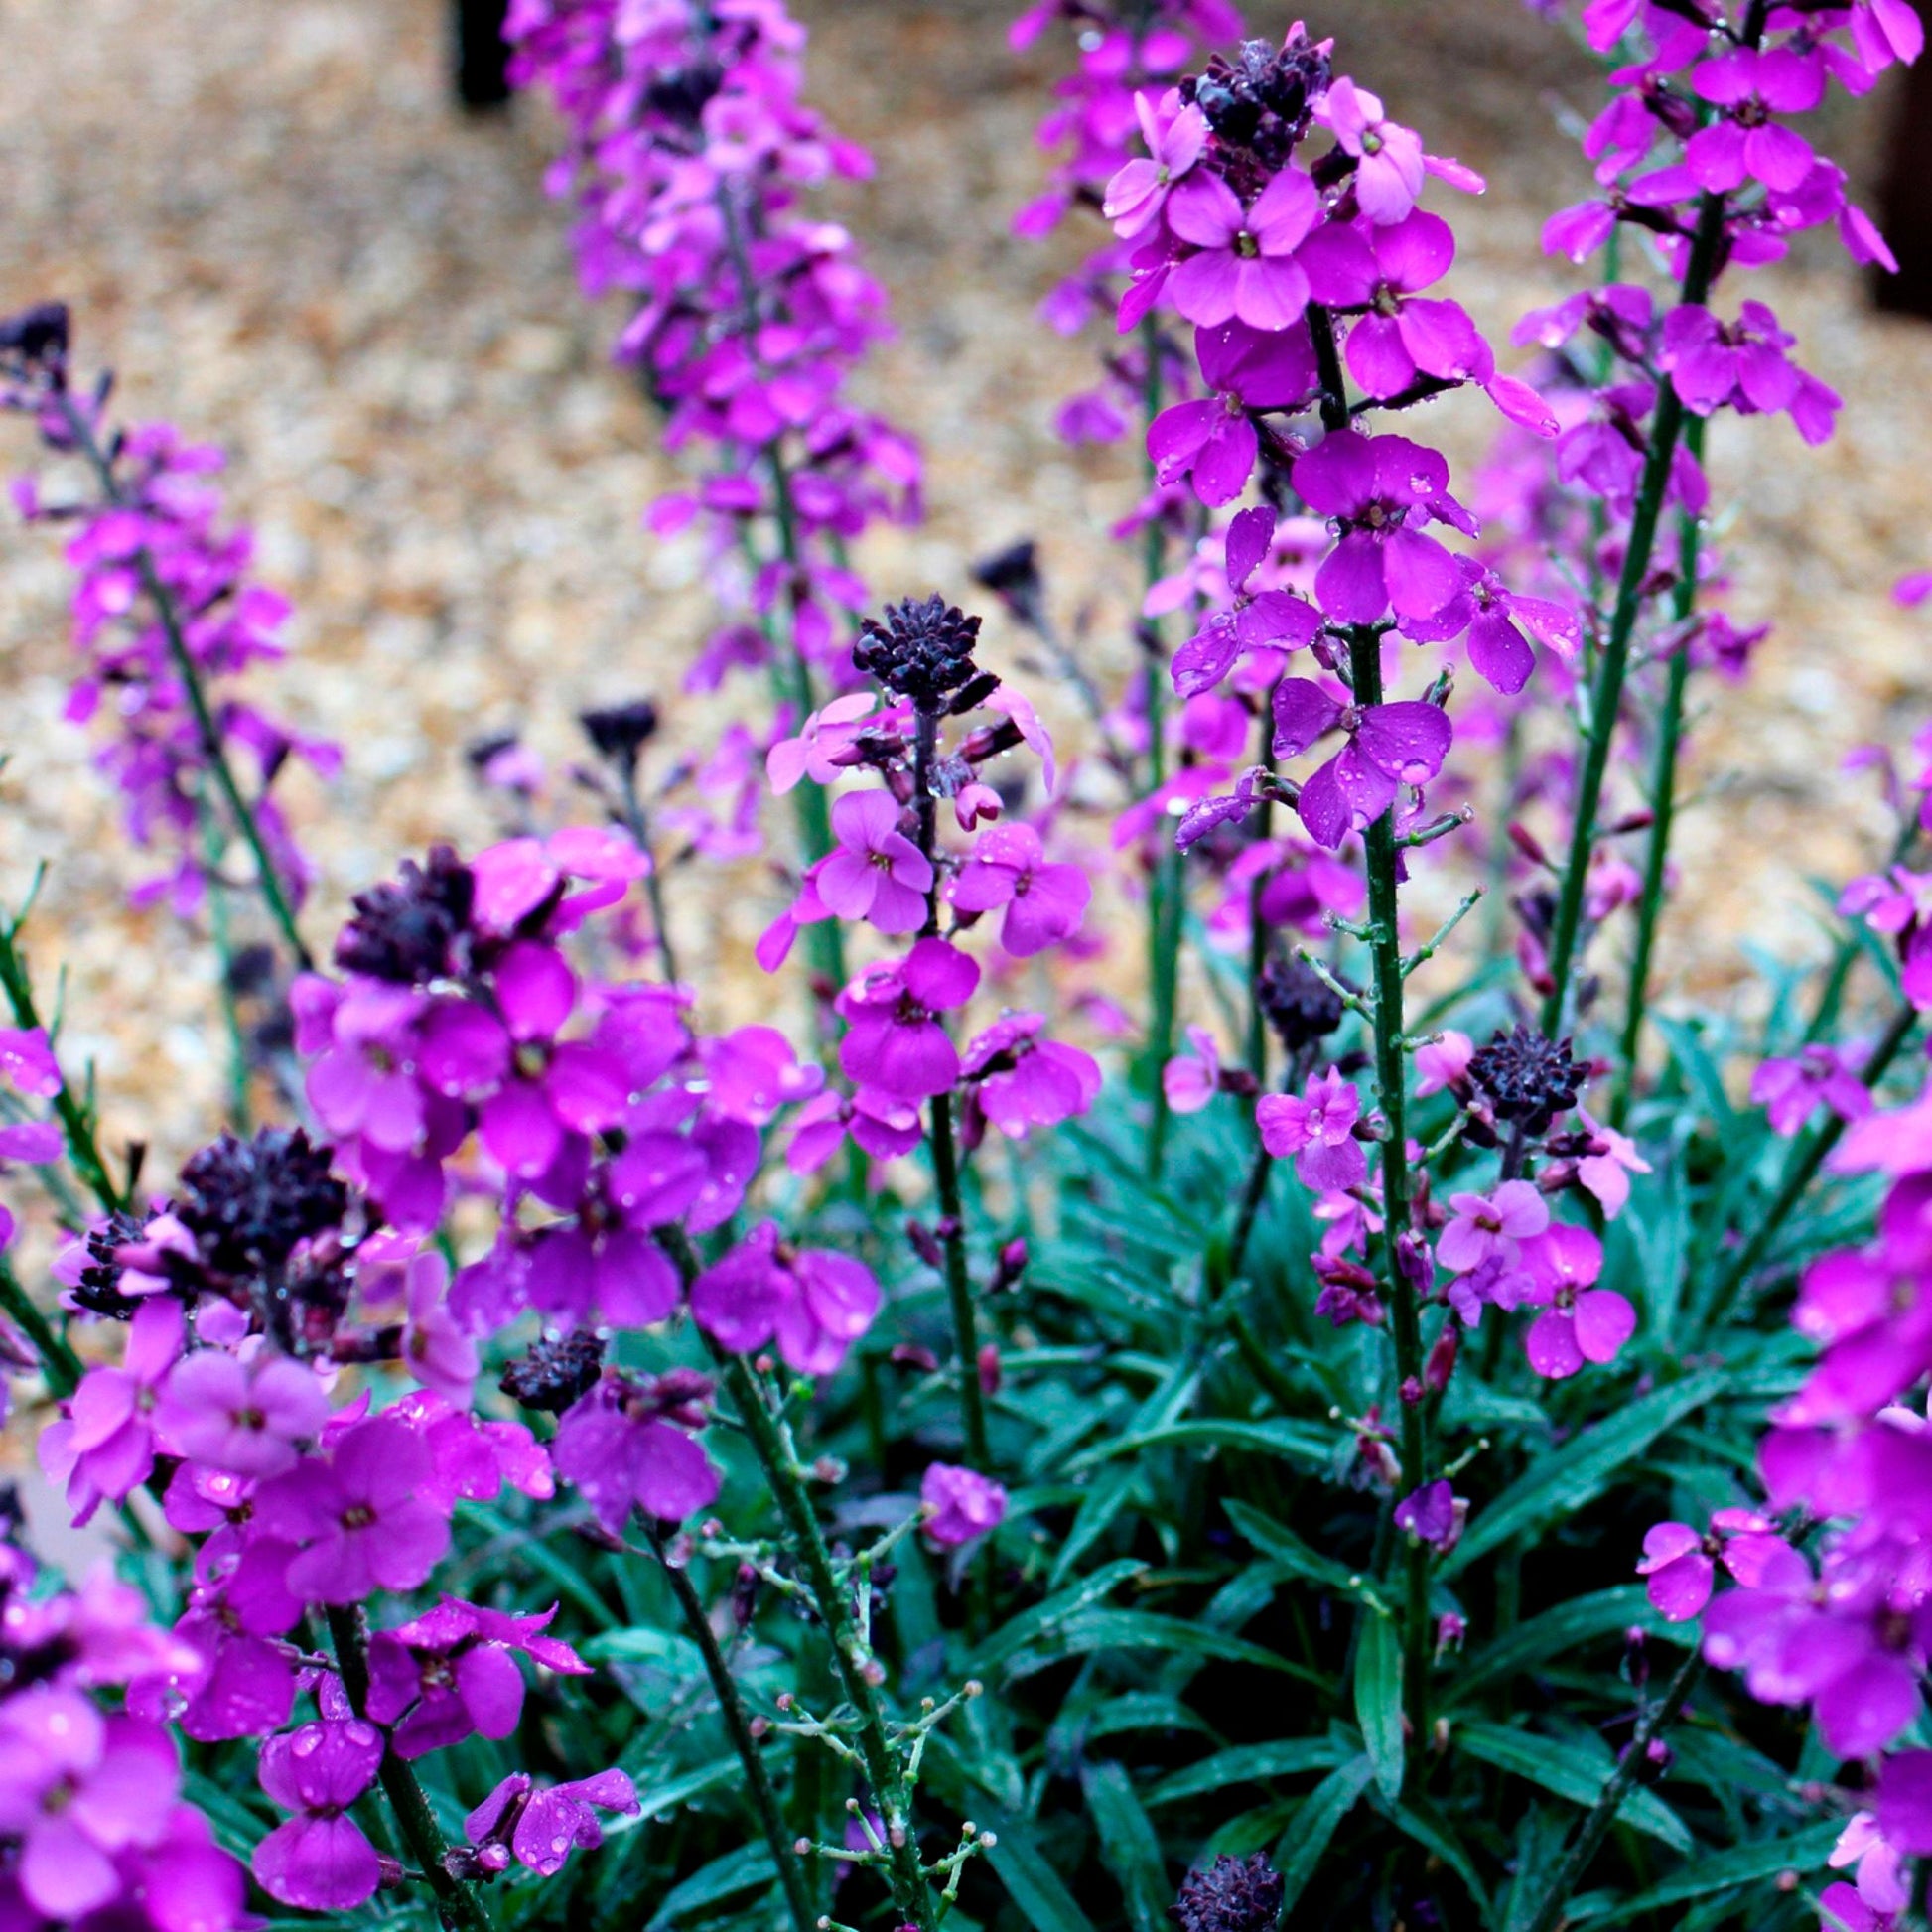 Achetez maintenant une plante vivace Erysimum 'Bowles Mauve' Violet |  Bakker.com